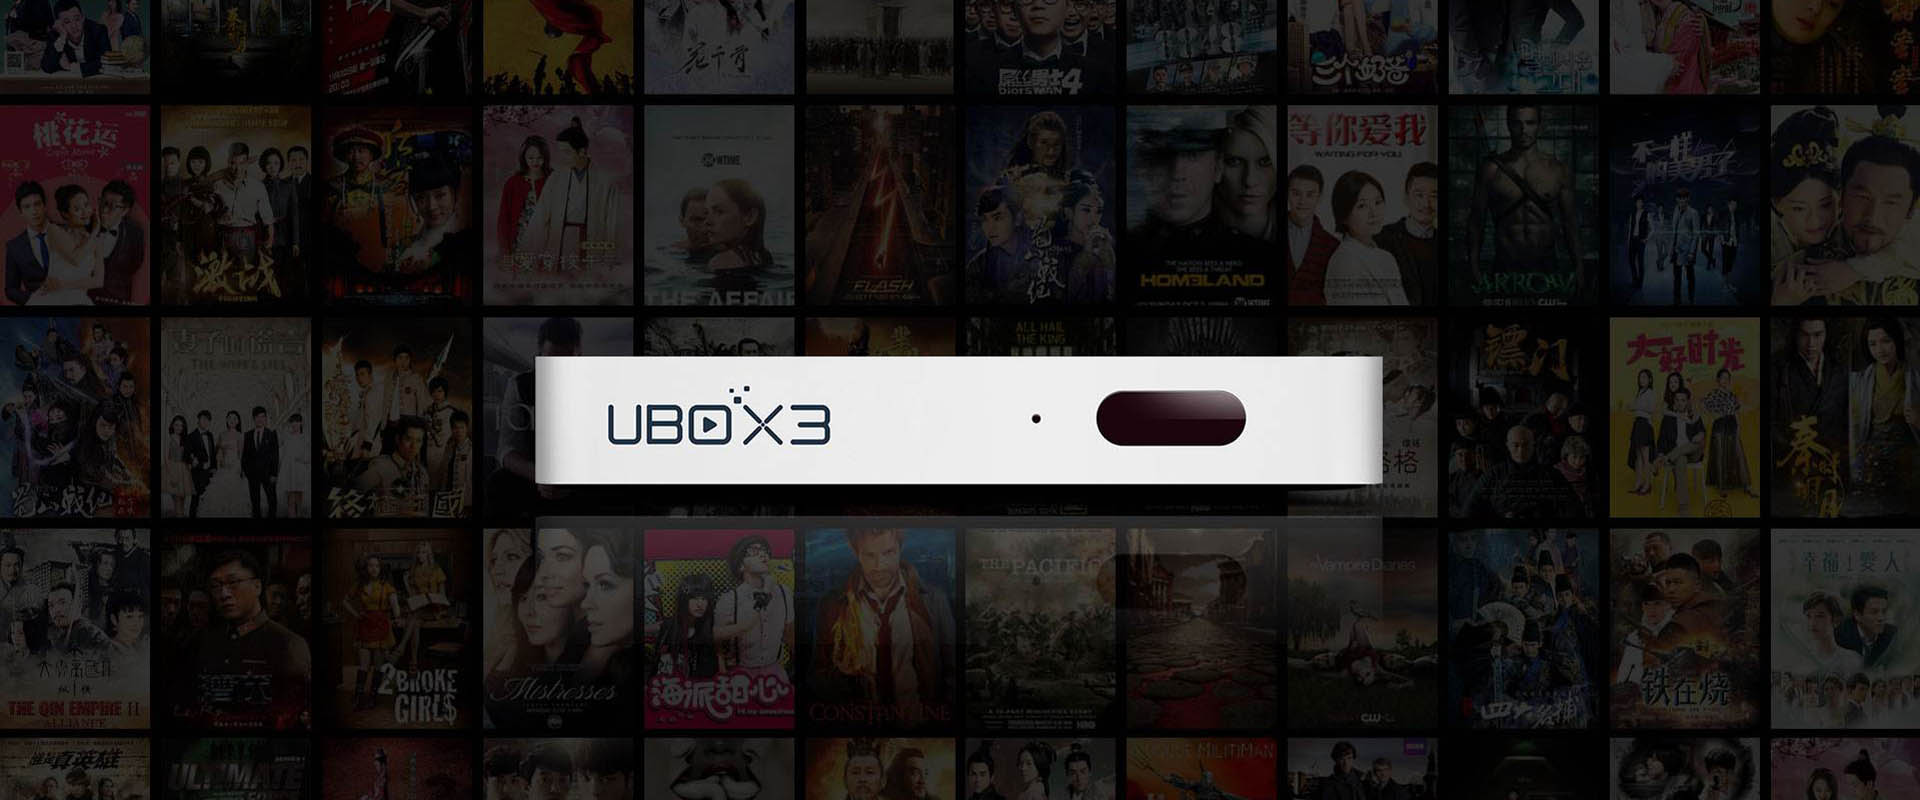 TV Box UBOX 3 — смотрите бесплатные телешоу с материкового Китая